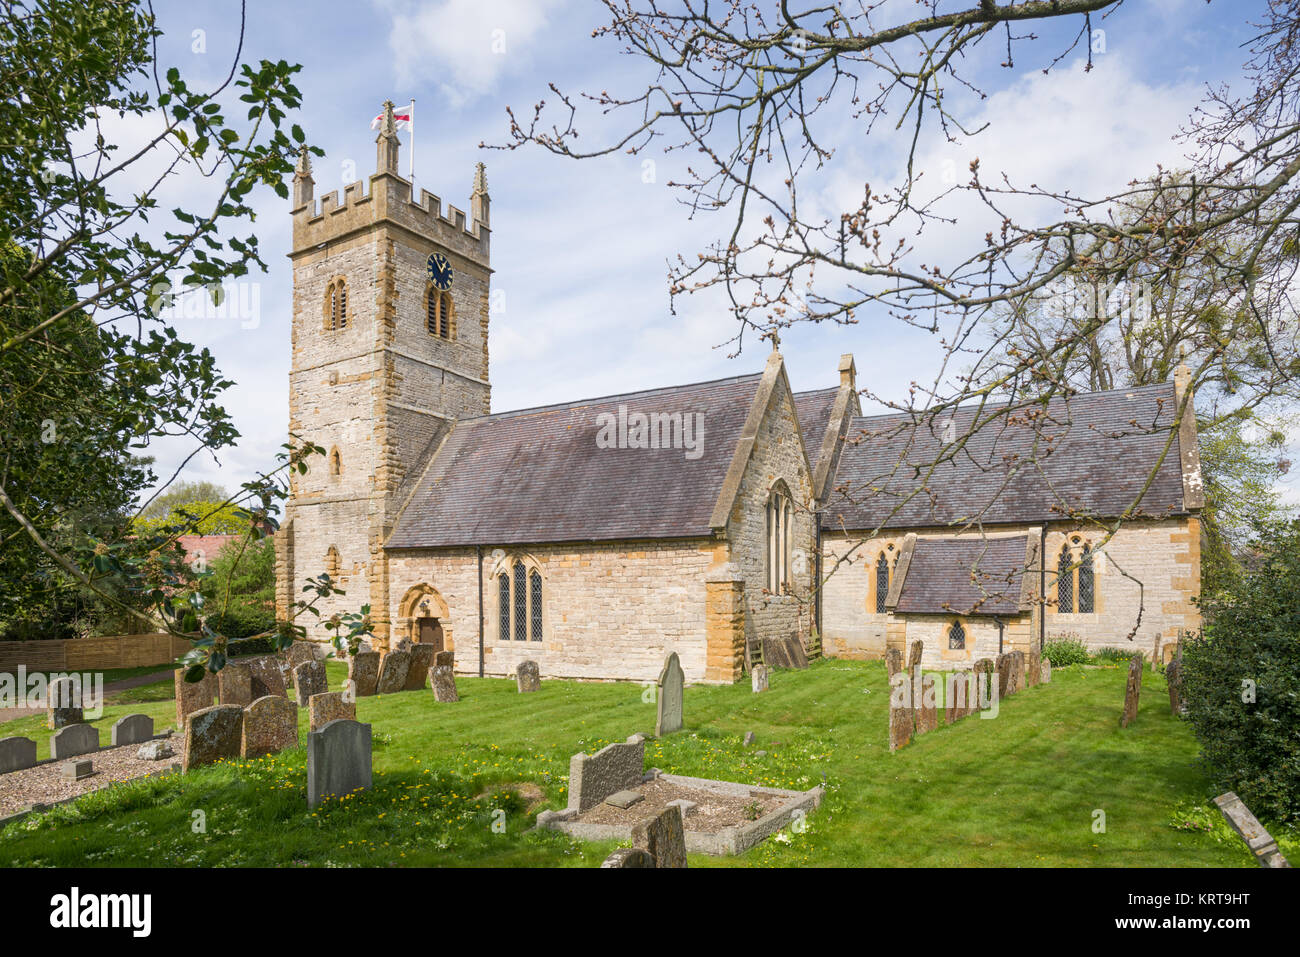 St. Mary's Church, Halford, in der Nähe von Moreton-in-Marsh, Warwickshire, England, Vereinigtes Königreich Stockfoto